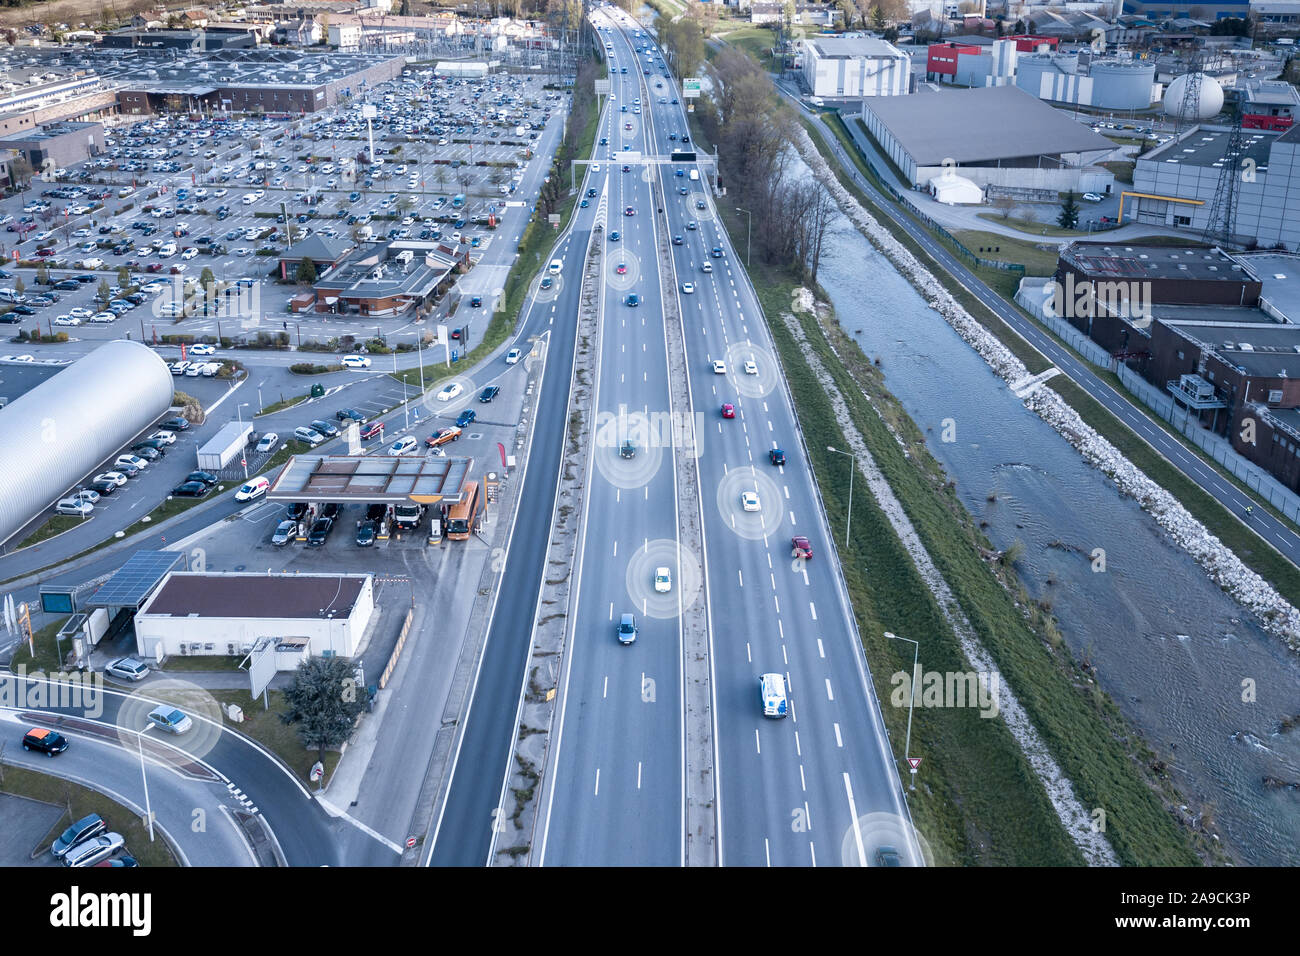 Autonome Fahrzeuge auf der Autobahn mit selbst Auto fahren sensing Umwelt durch Radar und Betriebssystem sicher auf Speedway dank künstlicher Intelligenz Stockfoto